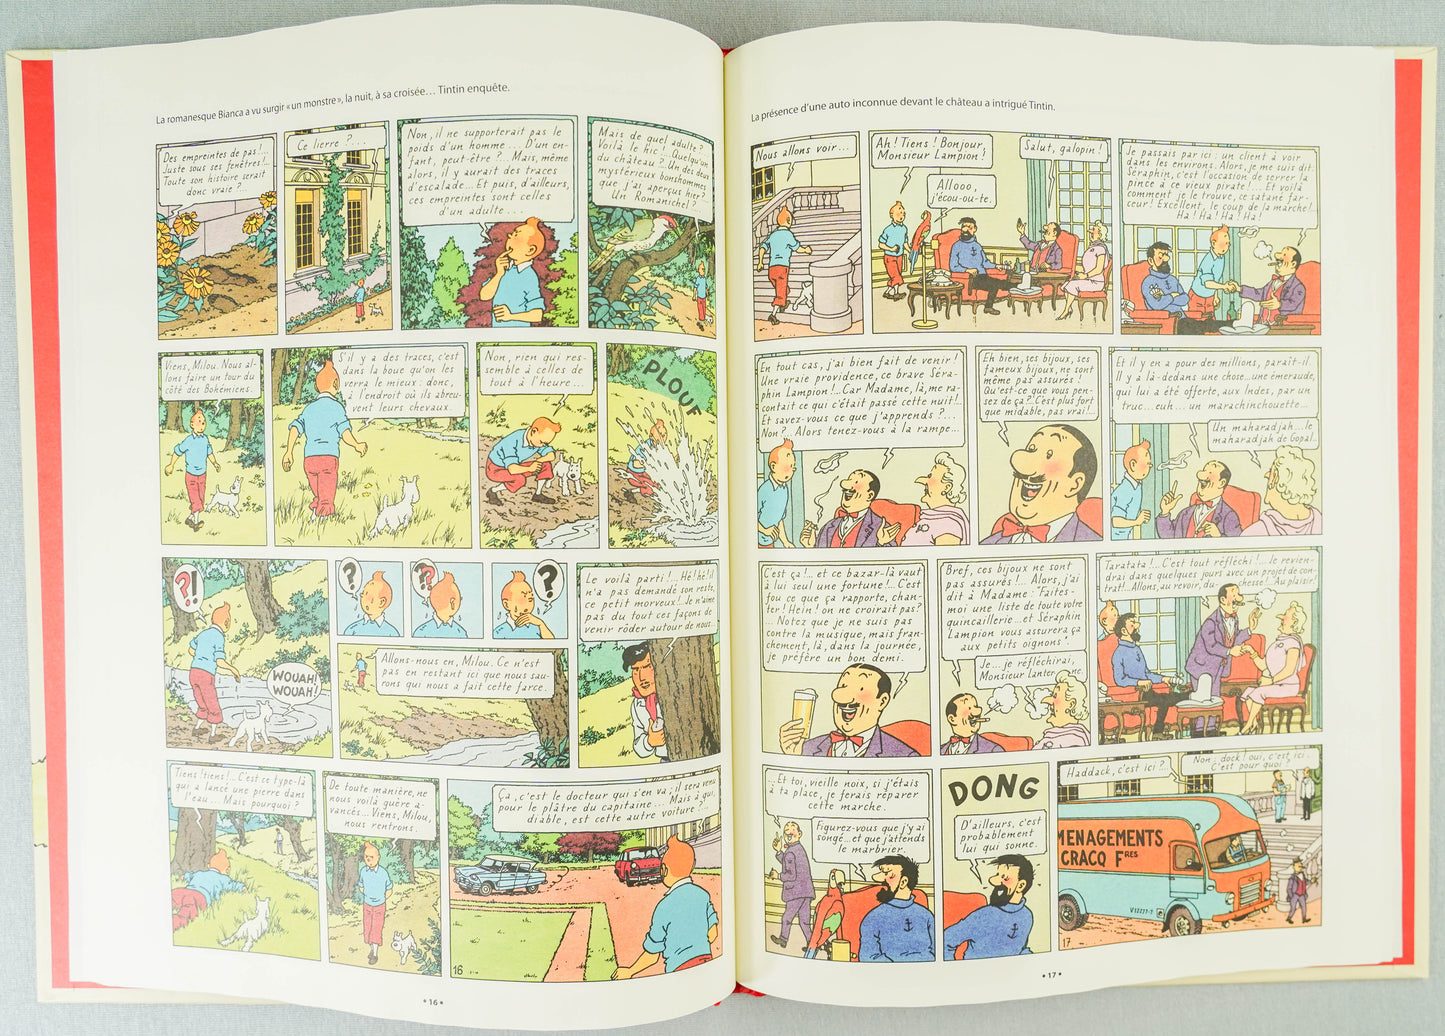 Les Bijoux de la Castafiore: 60 Yrs Version Journal Tintin 2023 1st Edition by Herge EO